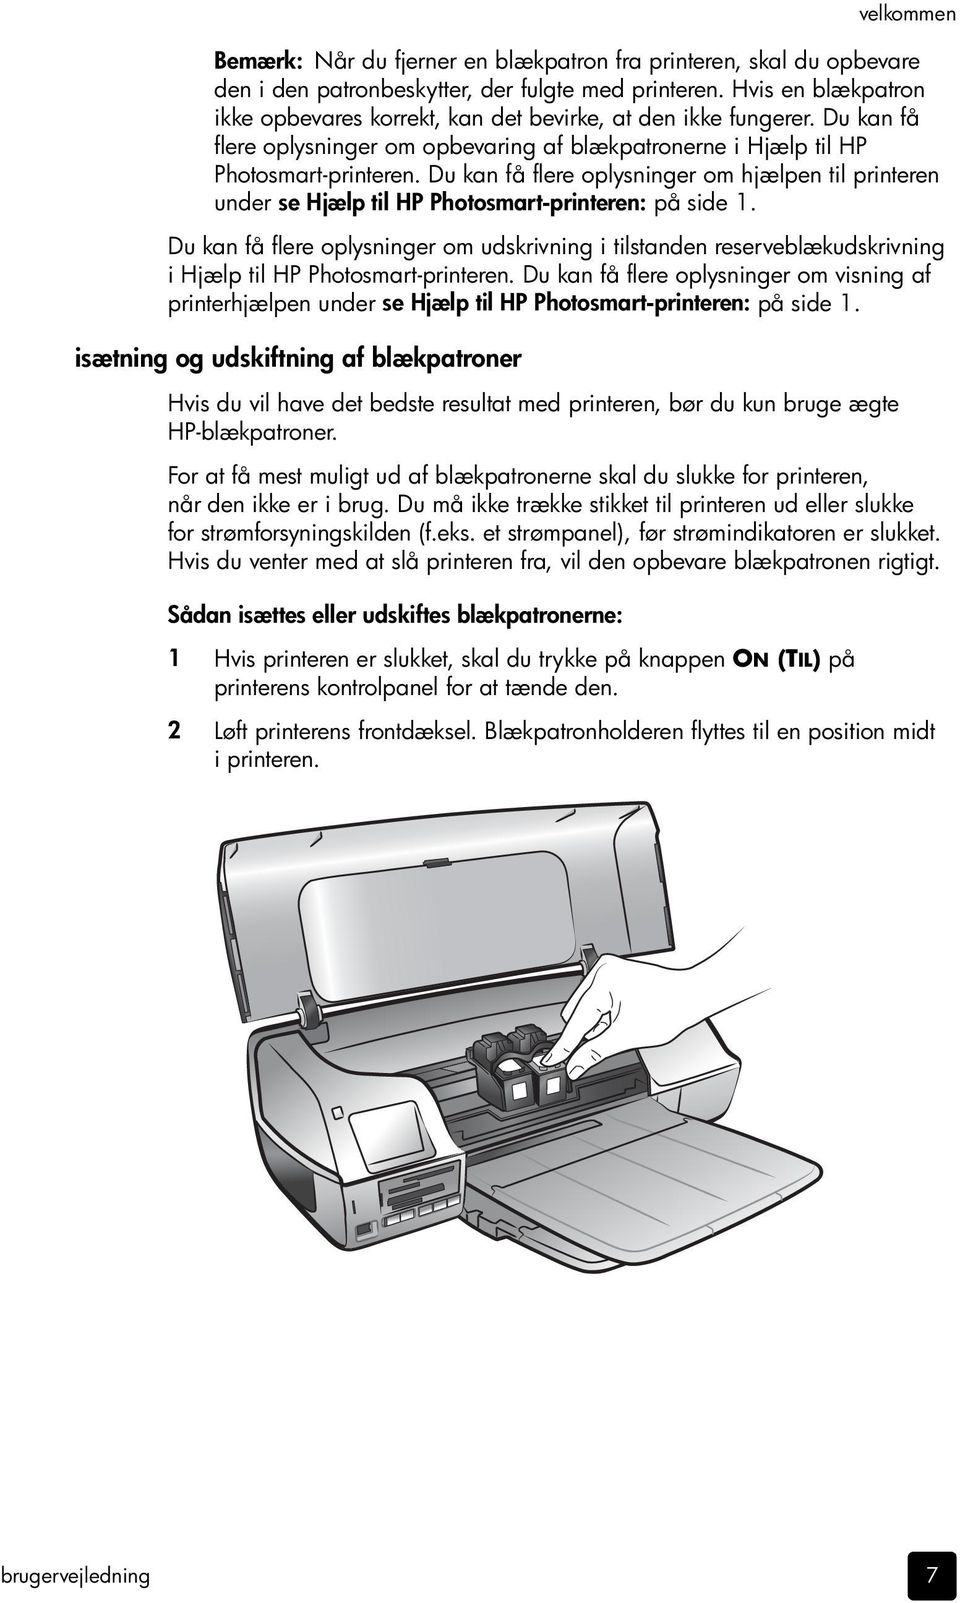 Du kan få flere oplysninger om hjælpen til printeren under se Hjælp til HP Photosmart-printeren: på side 1.